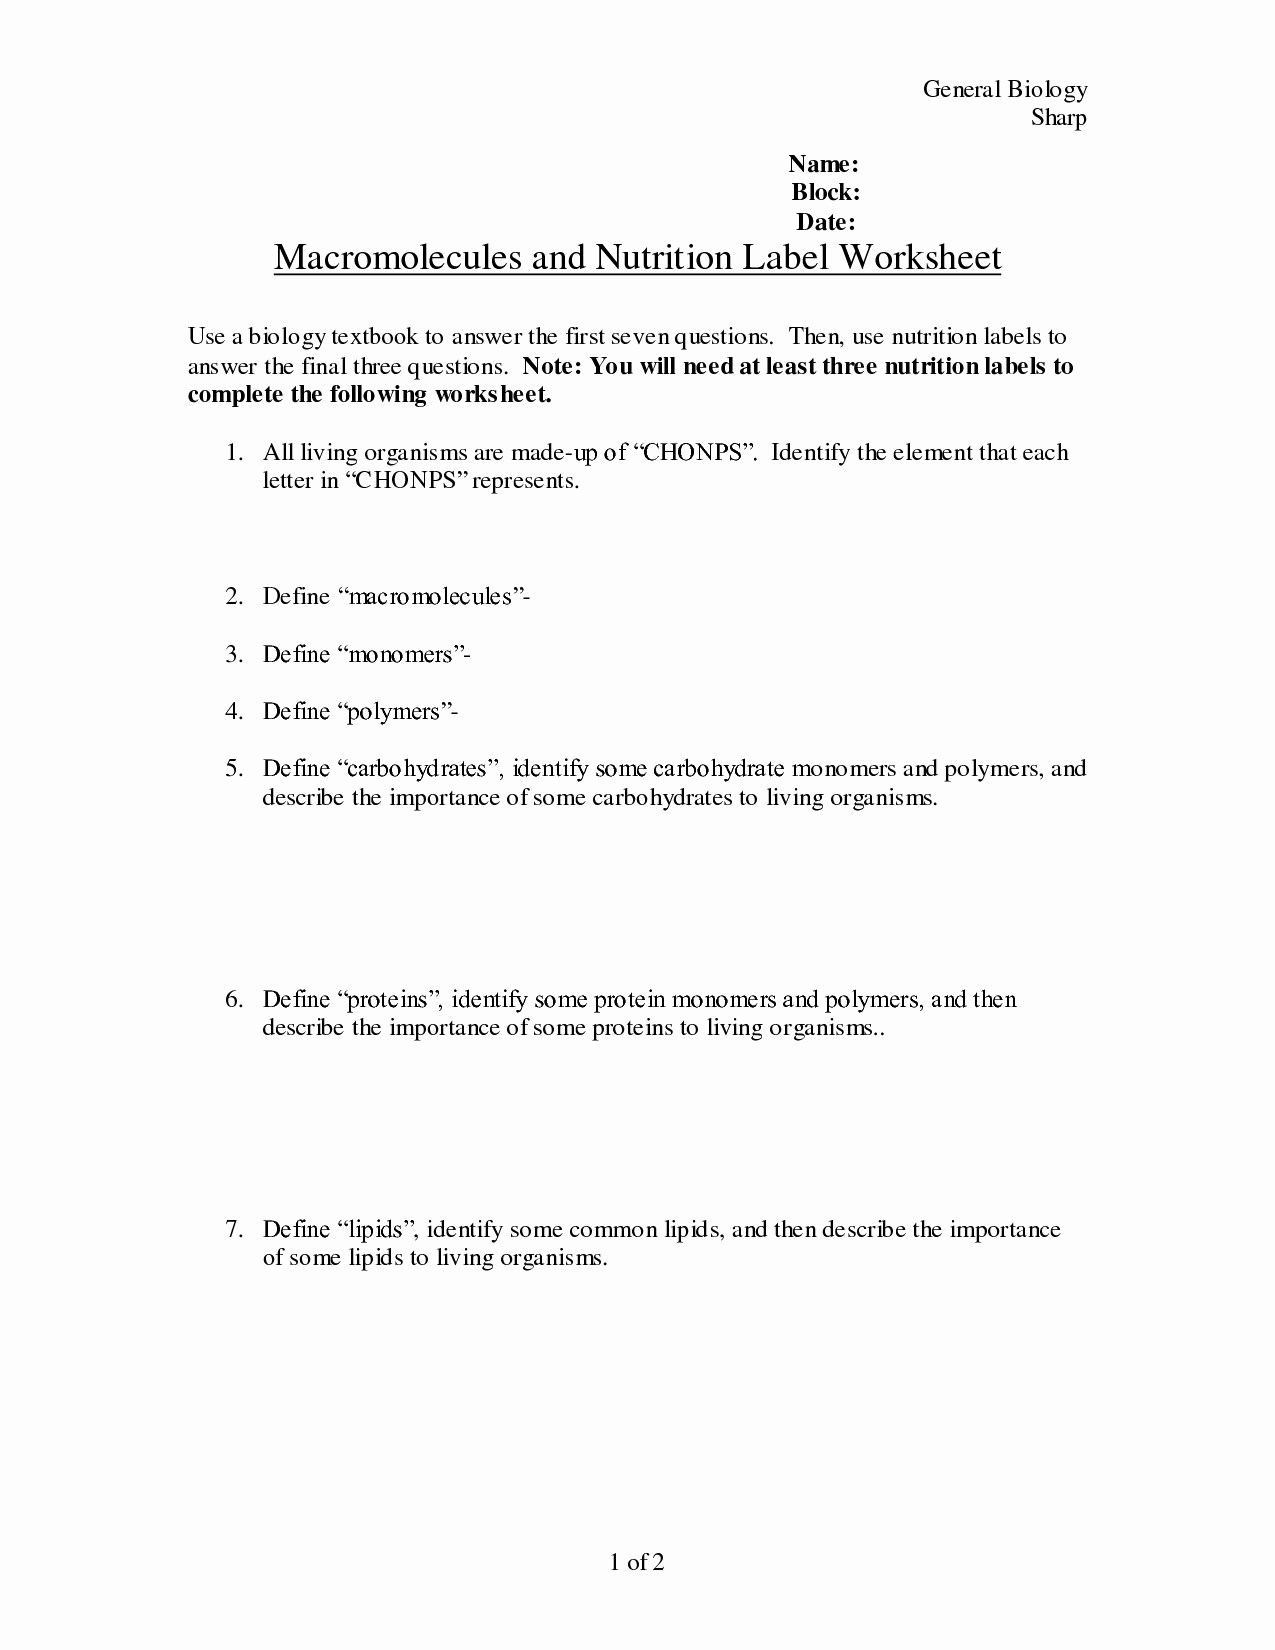 Nutrition Label Worksheet Answer Elegant 10 Best Of Carbohydrate Worksheet Activity